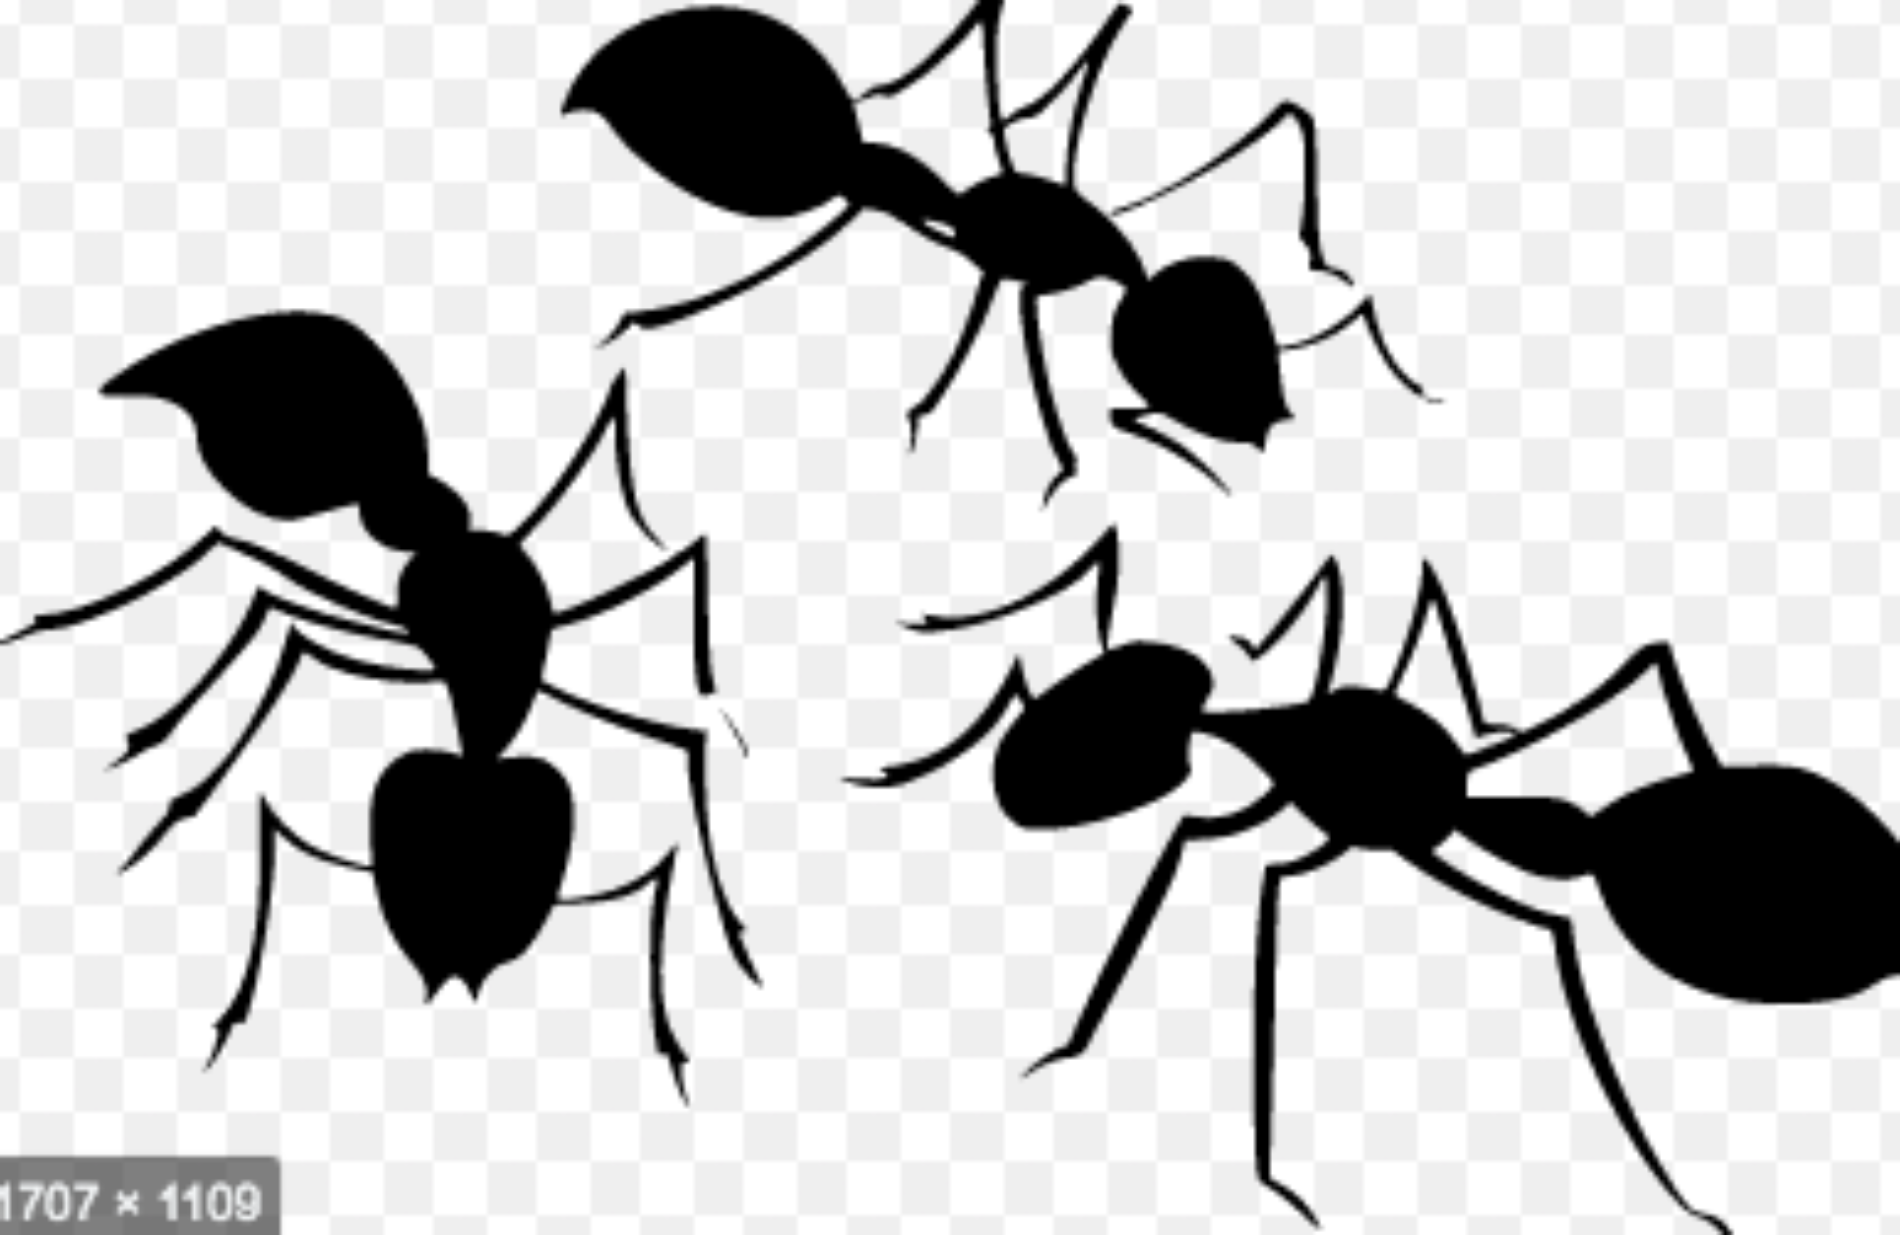 Horde of Robotic Ants